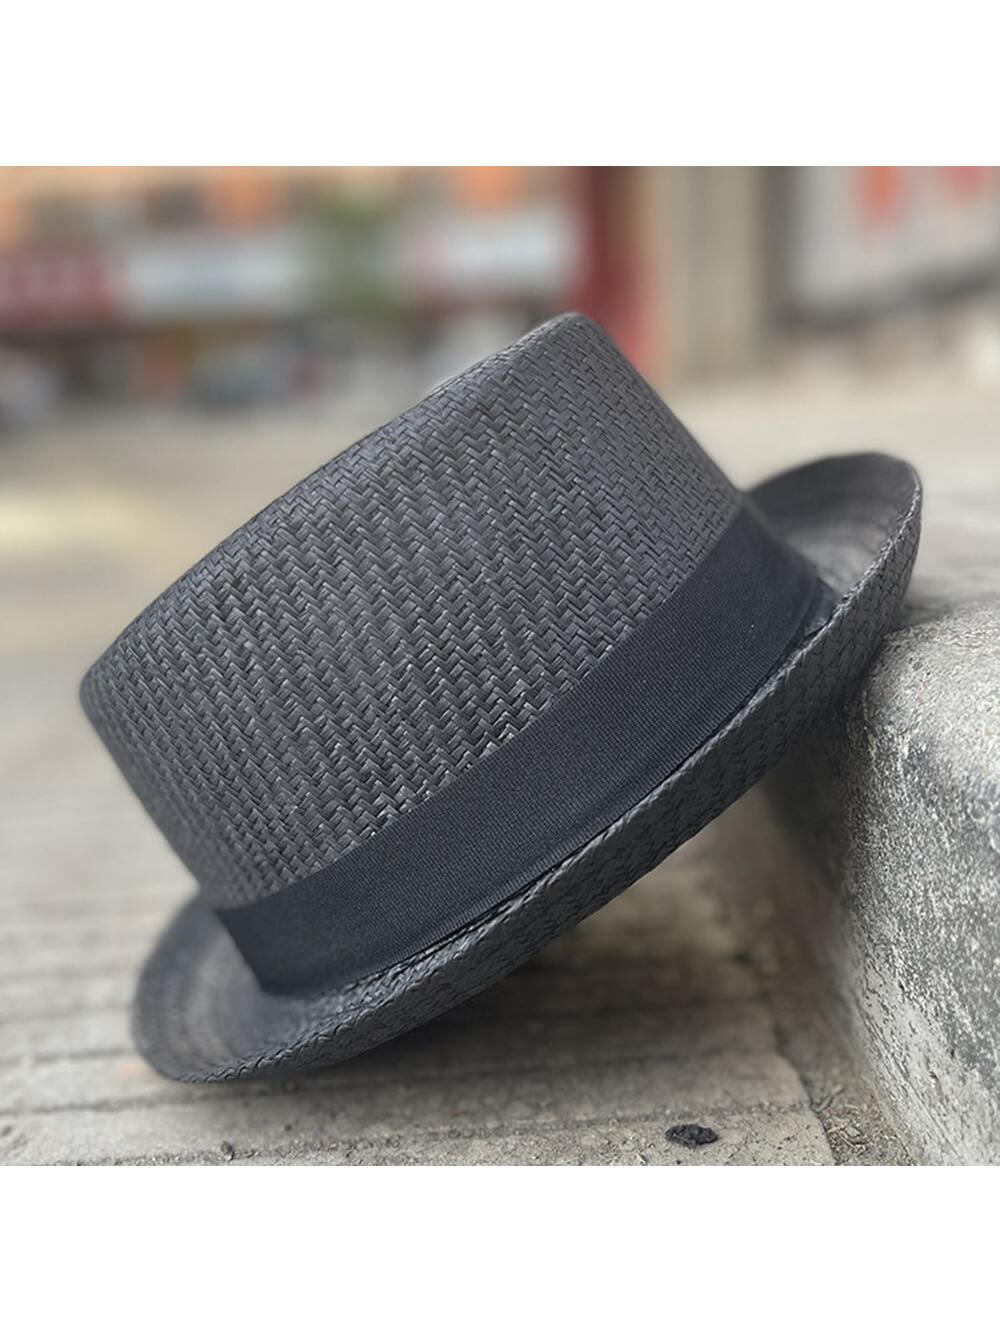 1 шт. мужская соломенная шляпа на лето, черный соломенная рыцарская шляпа с полым плетением